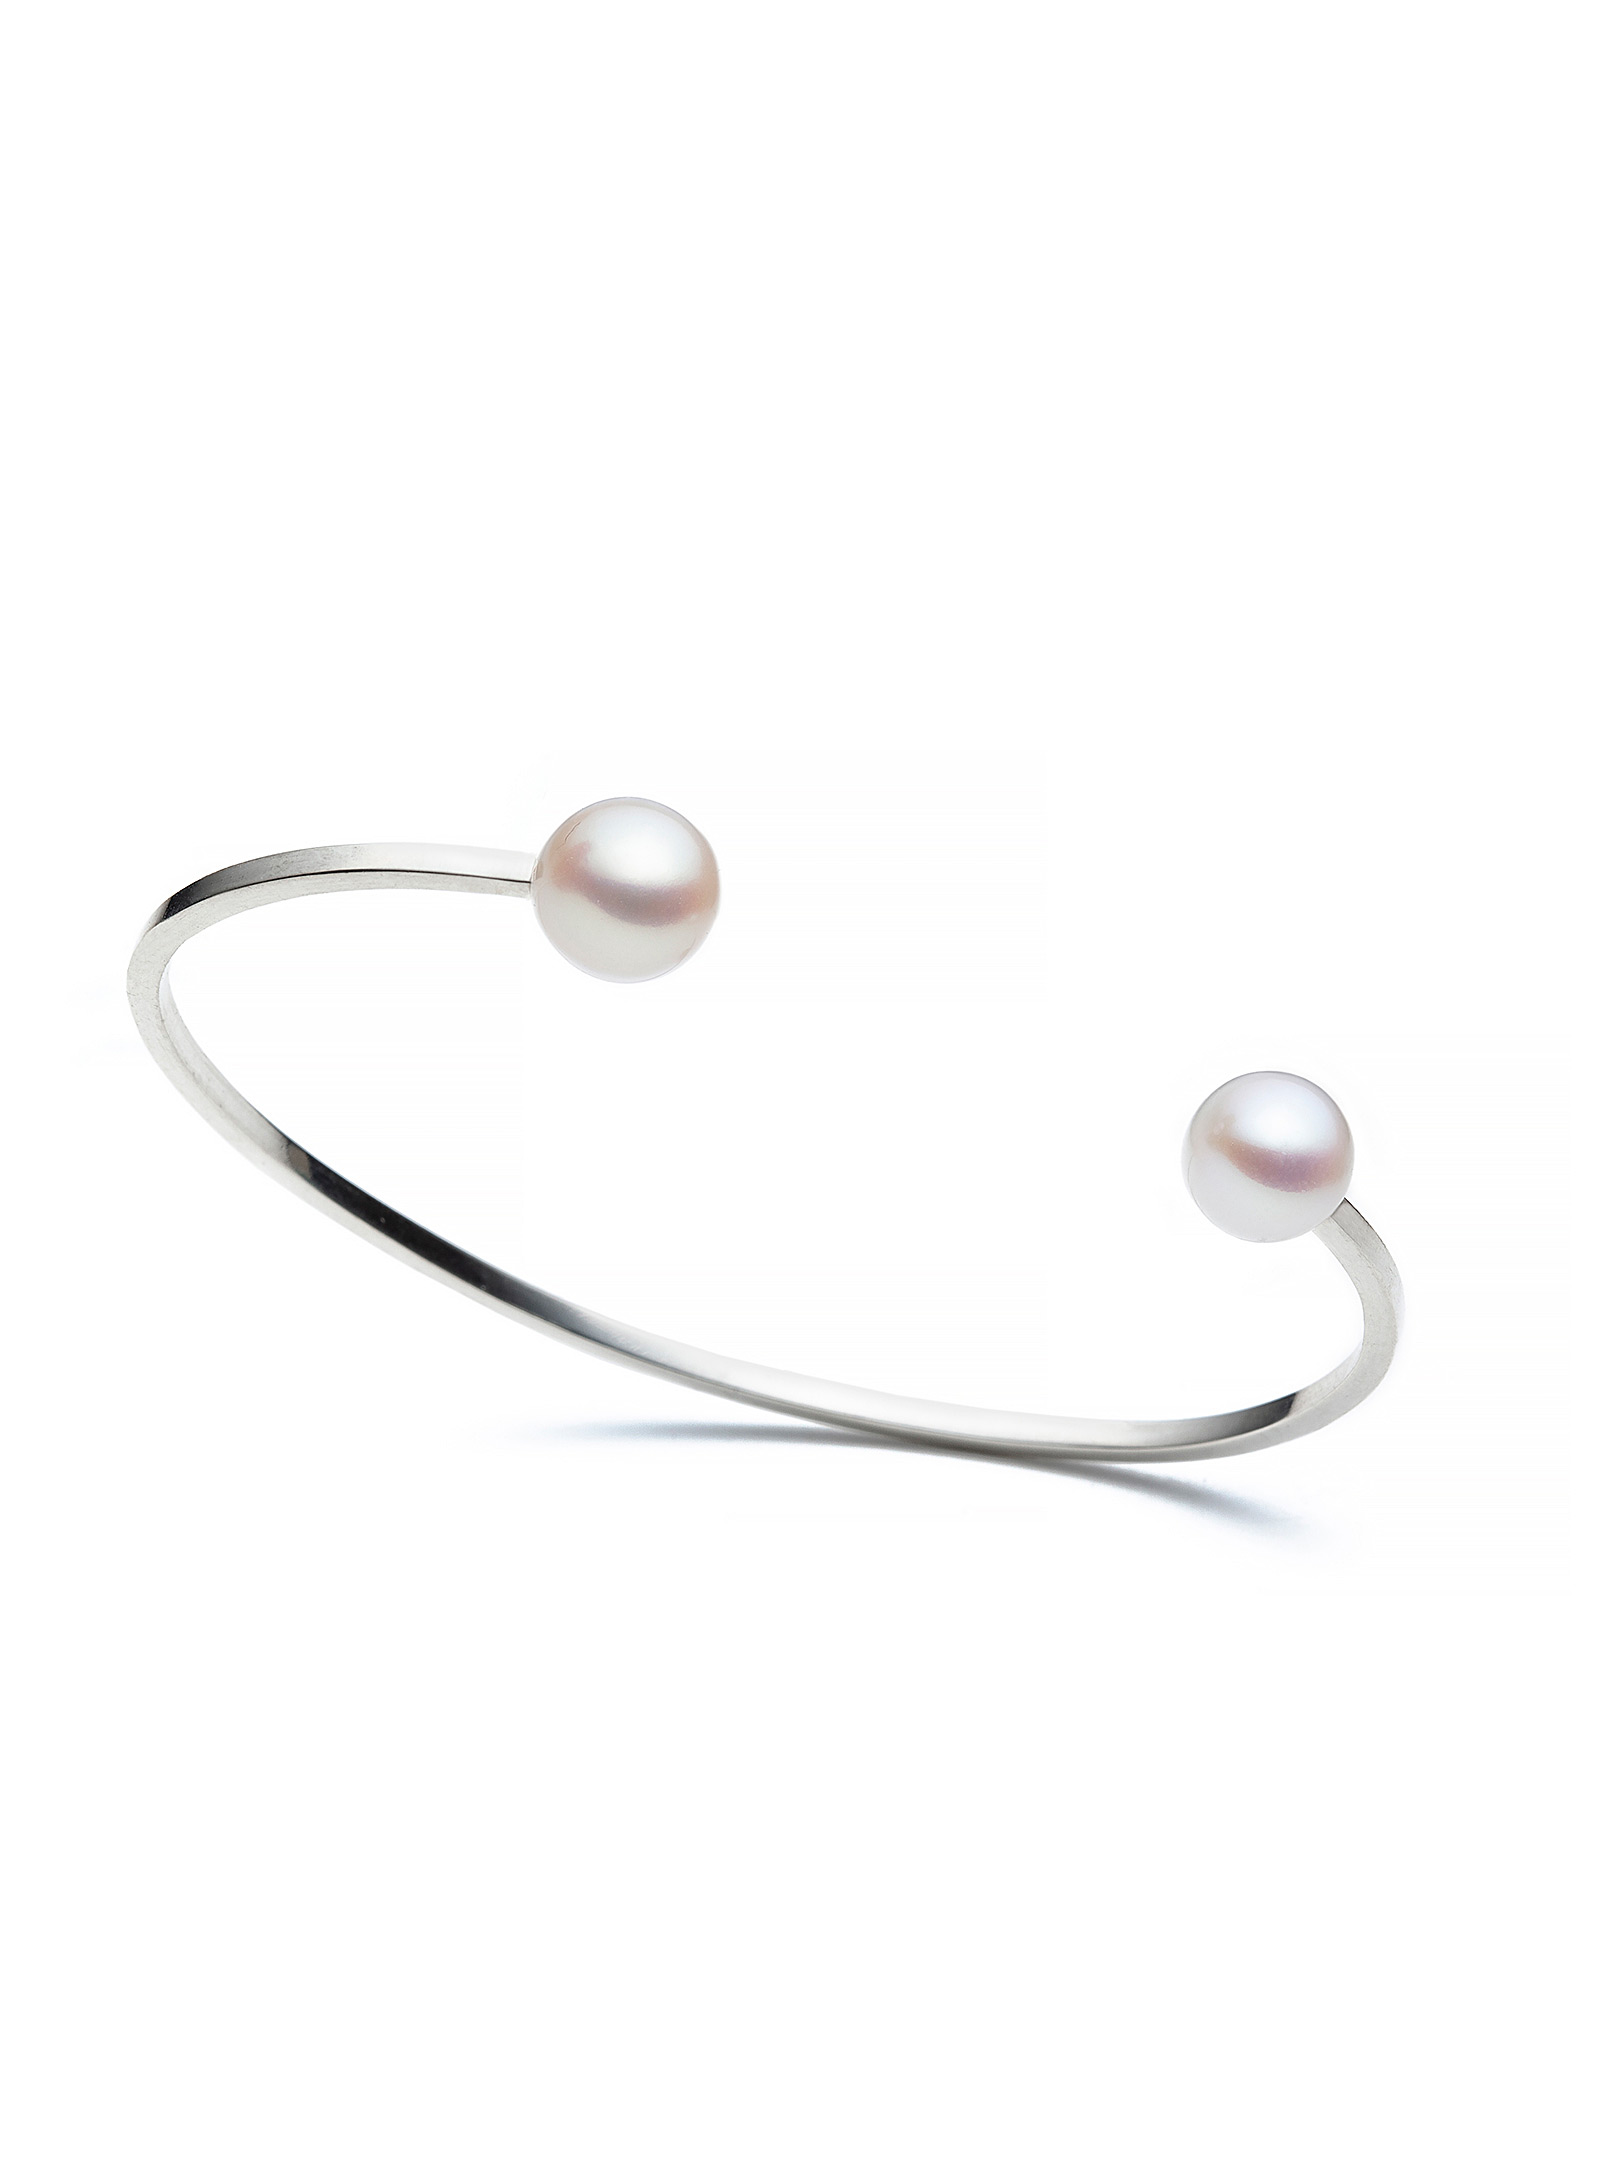 Atelier LAF - Pearl cuff bracelet